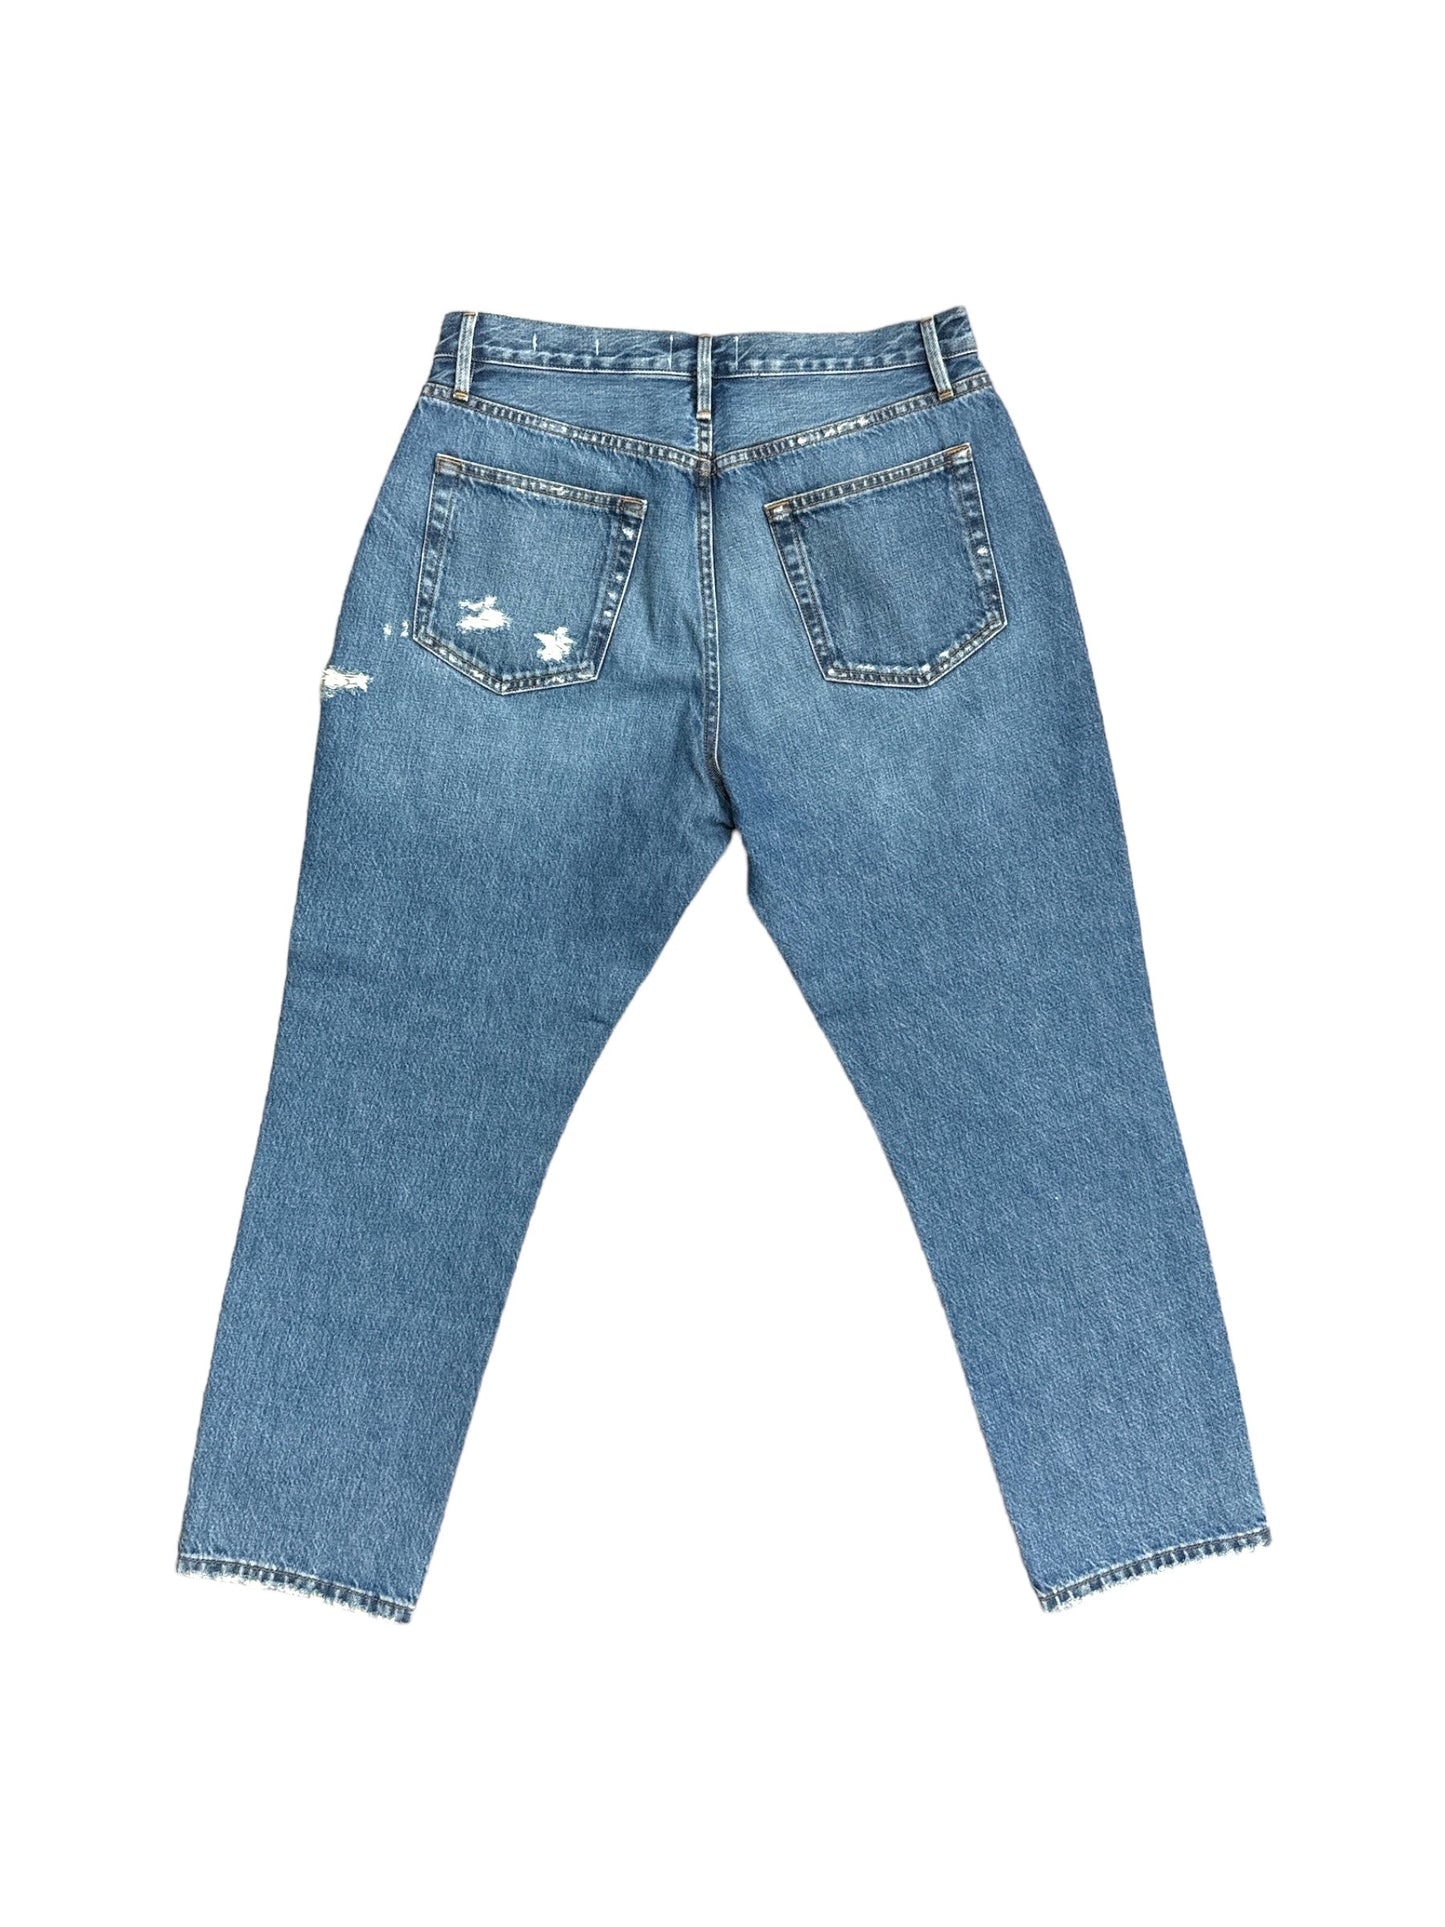 Blue Denim Jeans Designer Frame, Size 10